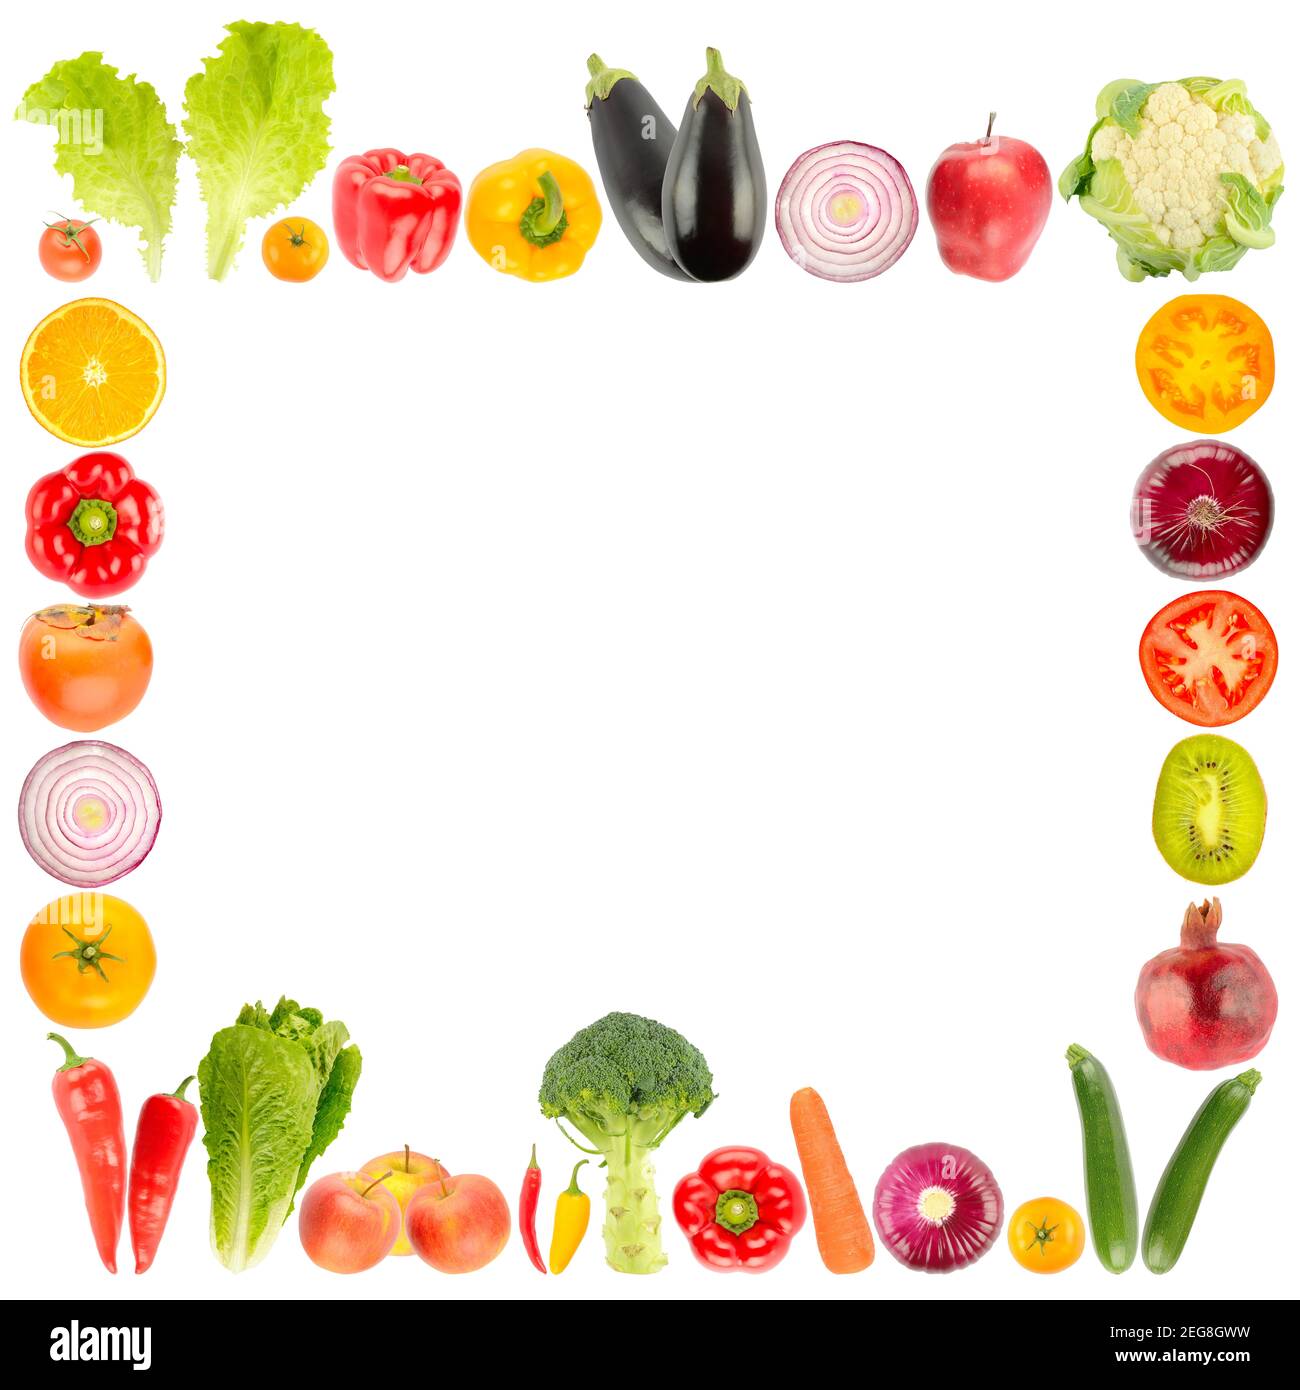 Cadre carré de fruits et légumes mûrs isolé sur fond blanc Banque D'Images